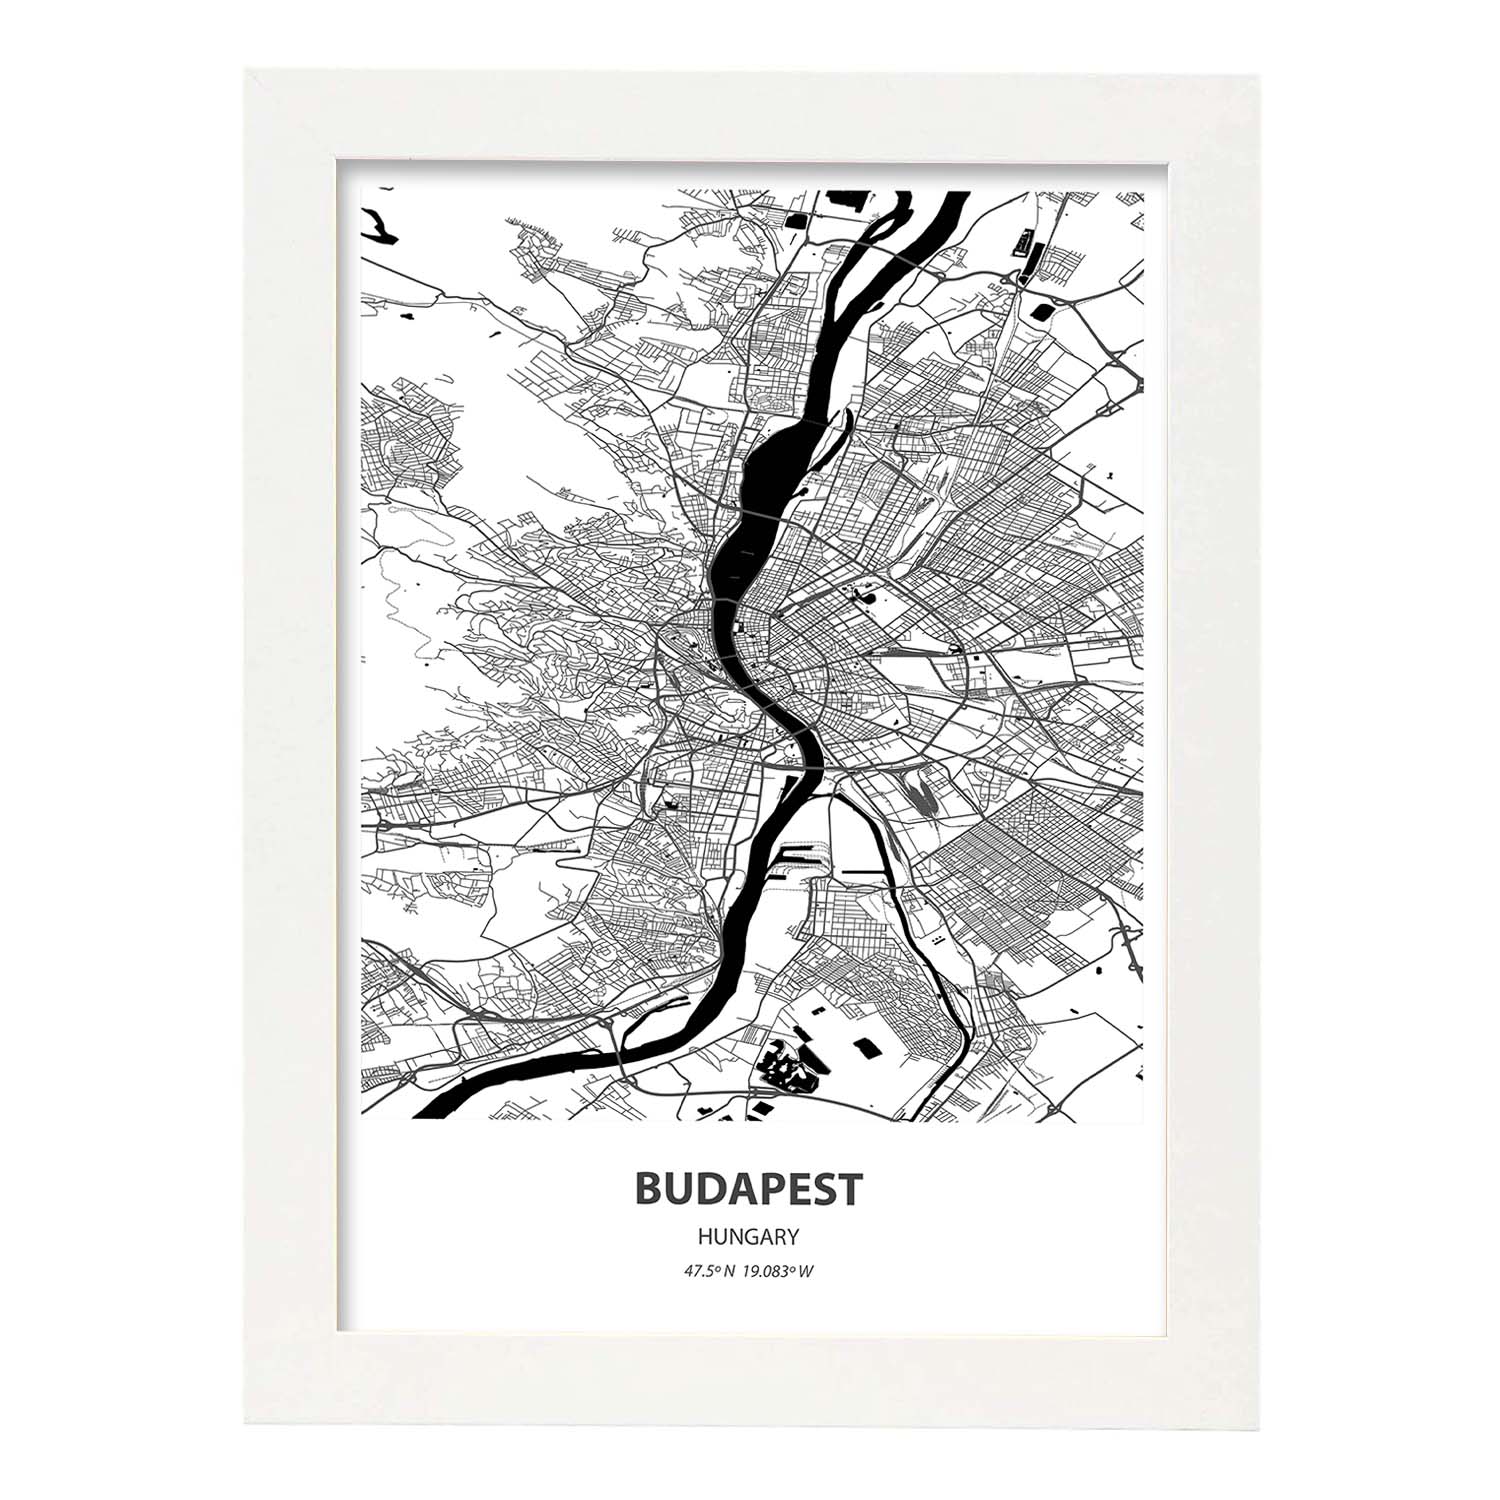 Poster con mapa de Budapest - Hungria. Láminas de ciudades de Europa con mares y ríos en color negro.-Artwork-Nacnic-A4-Marco Blanco-Nacnic Estudio SL